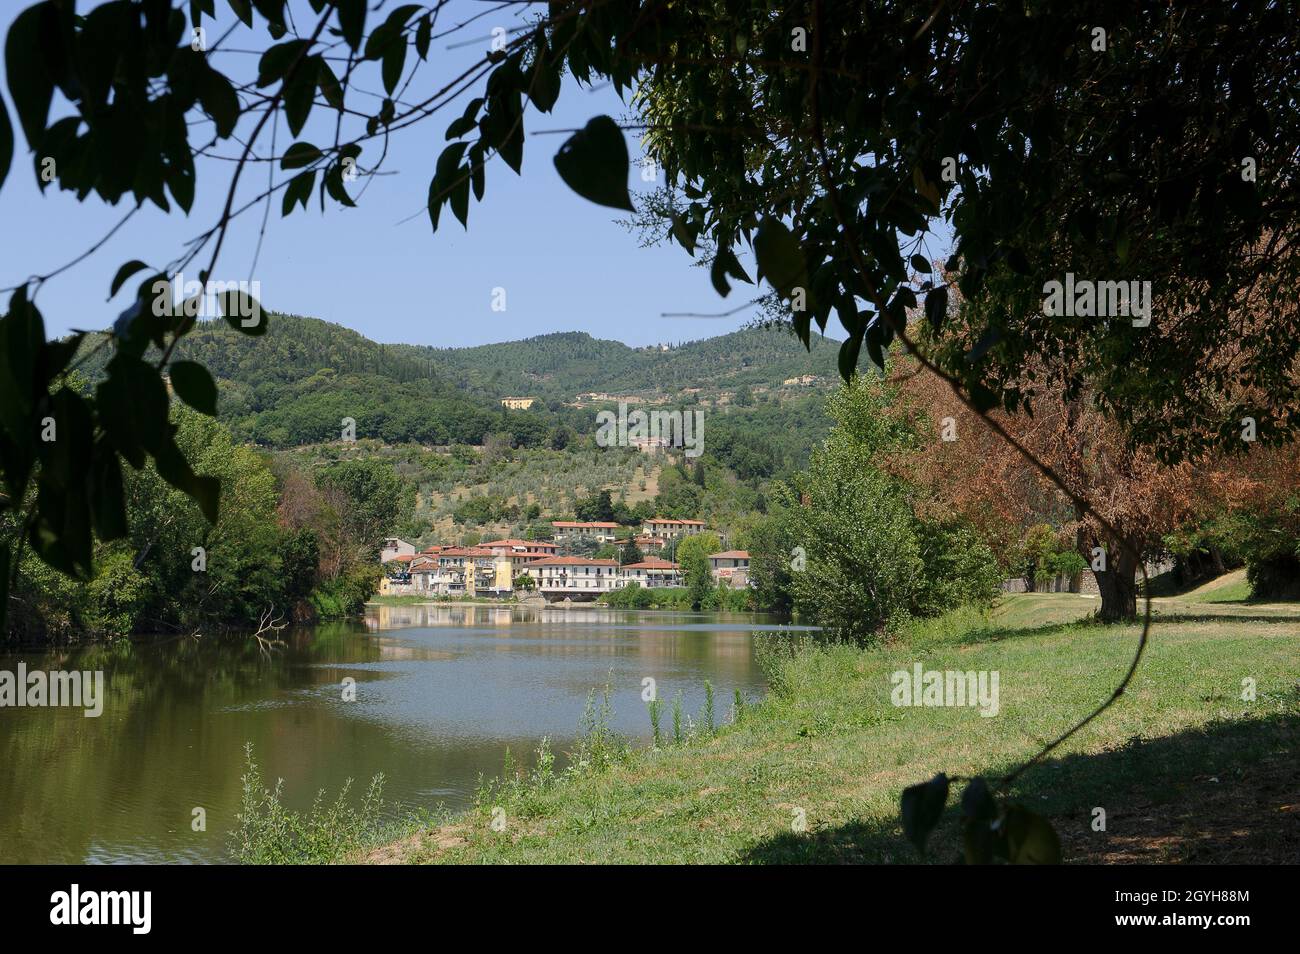 Europa, Italia, Toscana, provincia de Florencia, el río Arno en Remole en el Casentino. Foto de stock